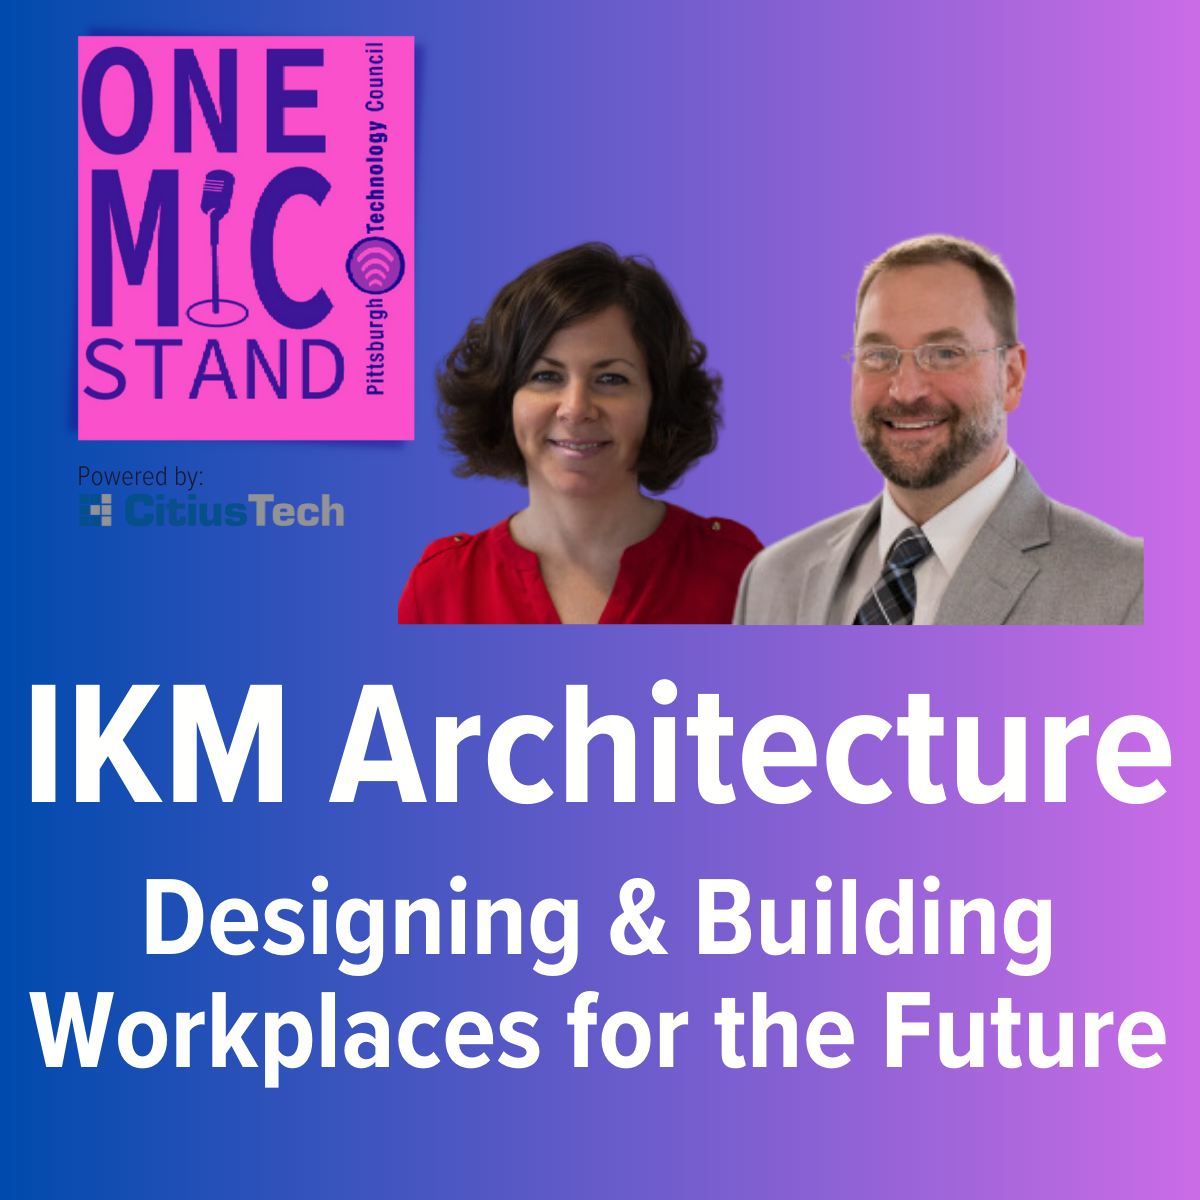 IKM Architects